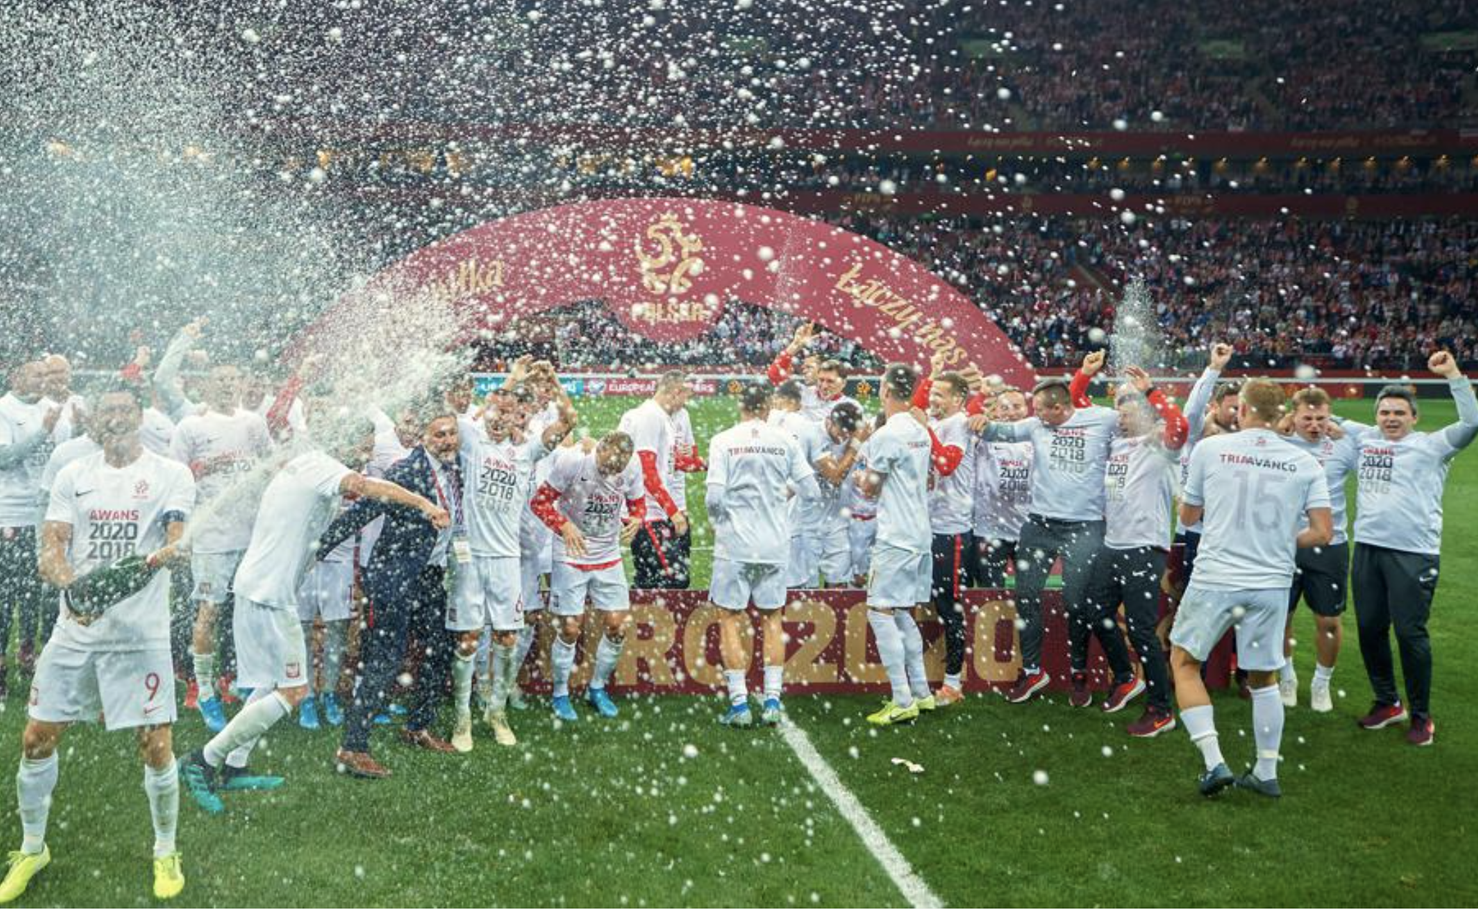 Thêm Nga và Ba Lan giành vé dự VCK Euro 2020 - Báo Người lao động